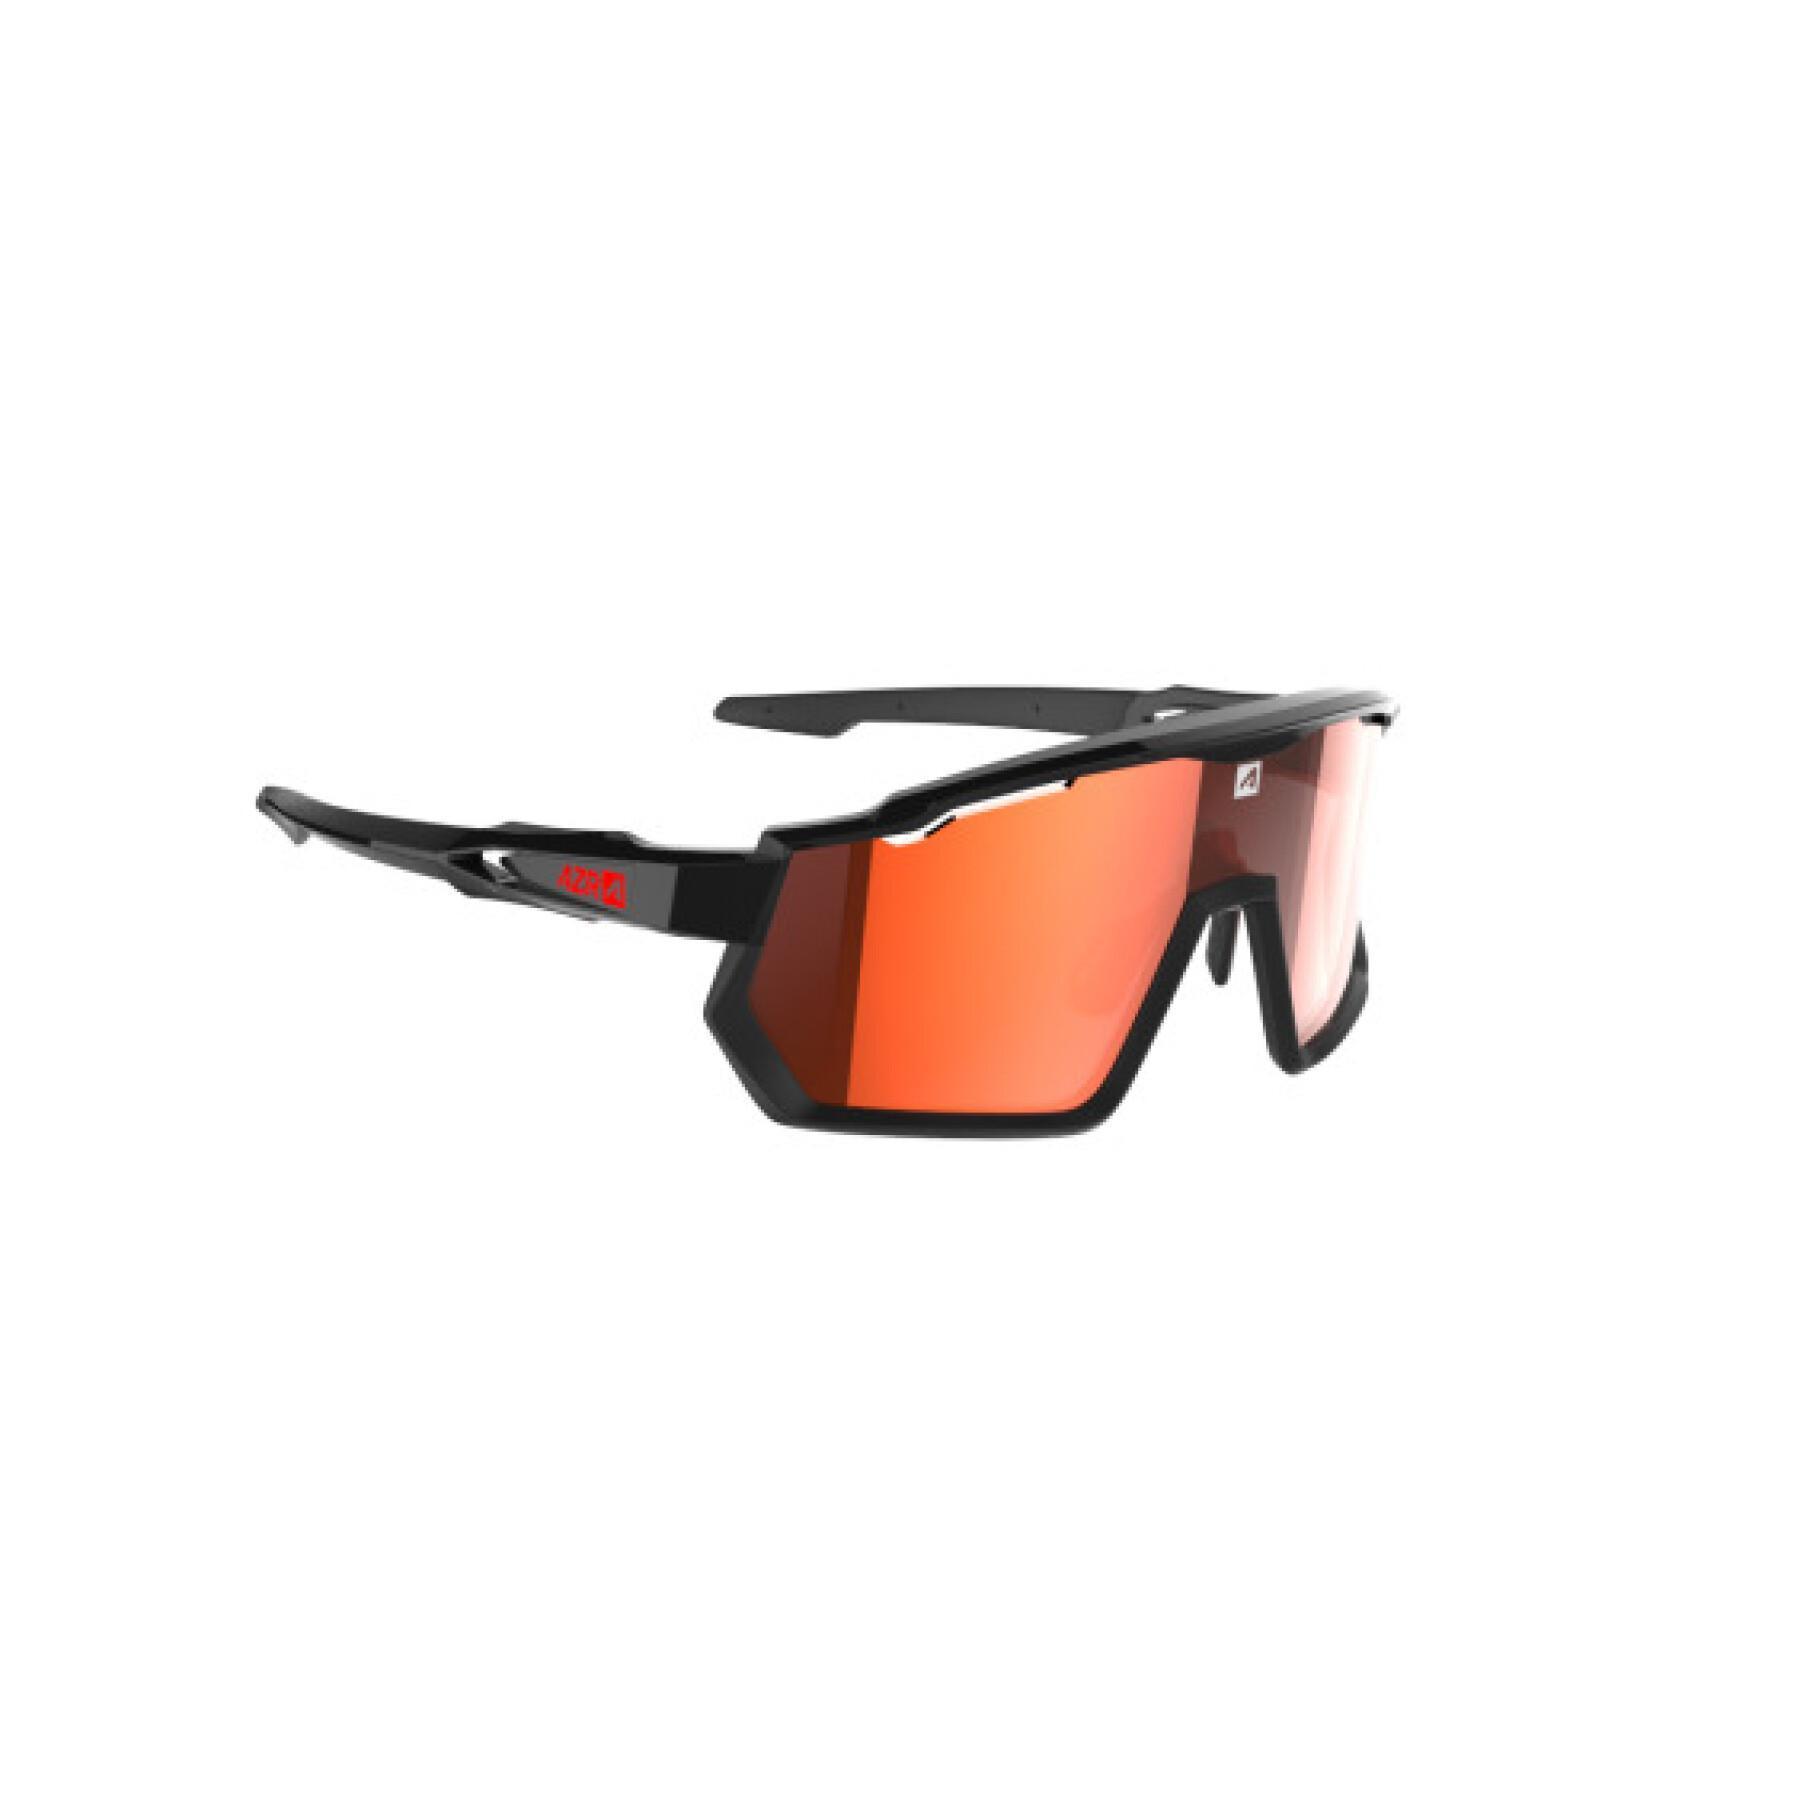 Brille mit irisierendem roten Bildschirm photochromatische Kategorie 0 bis 3 AZR Kromic Pro Race Rx